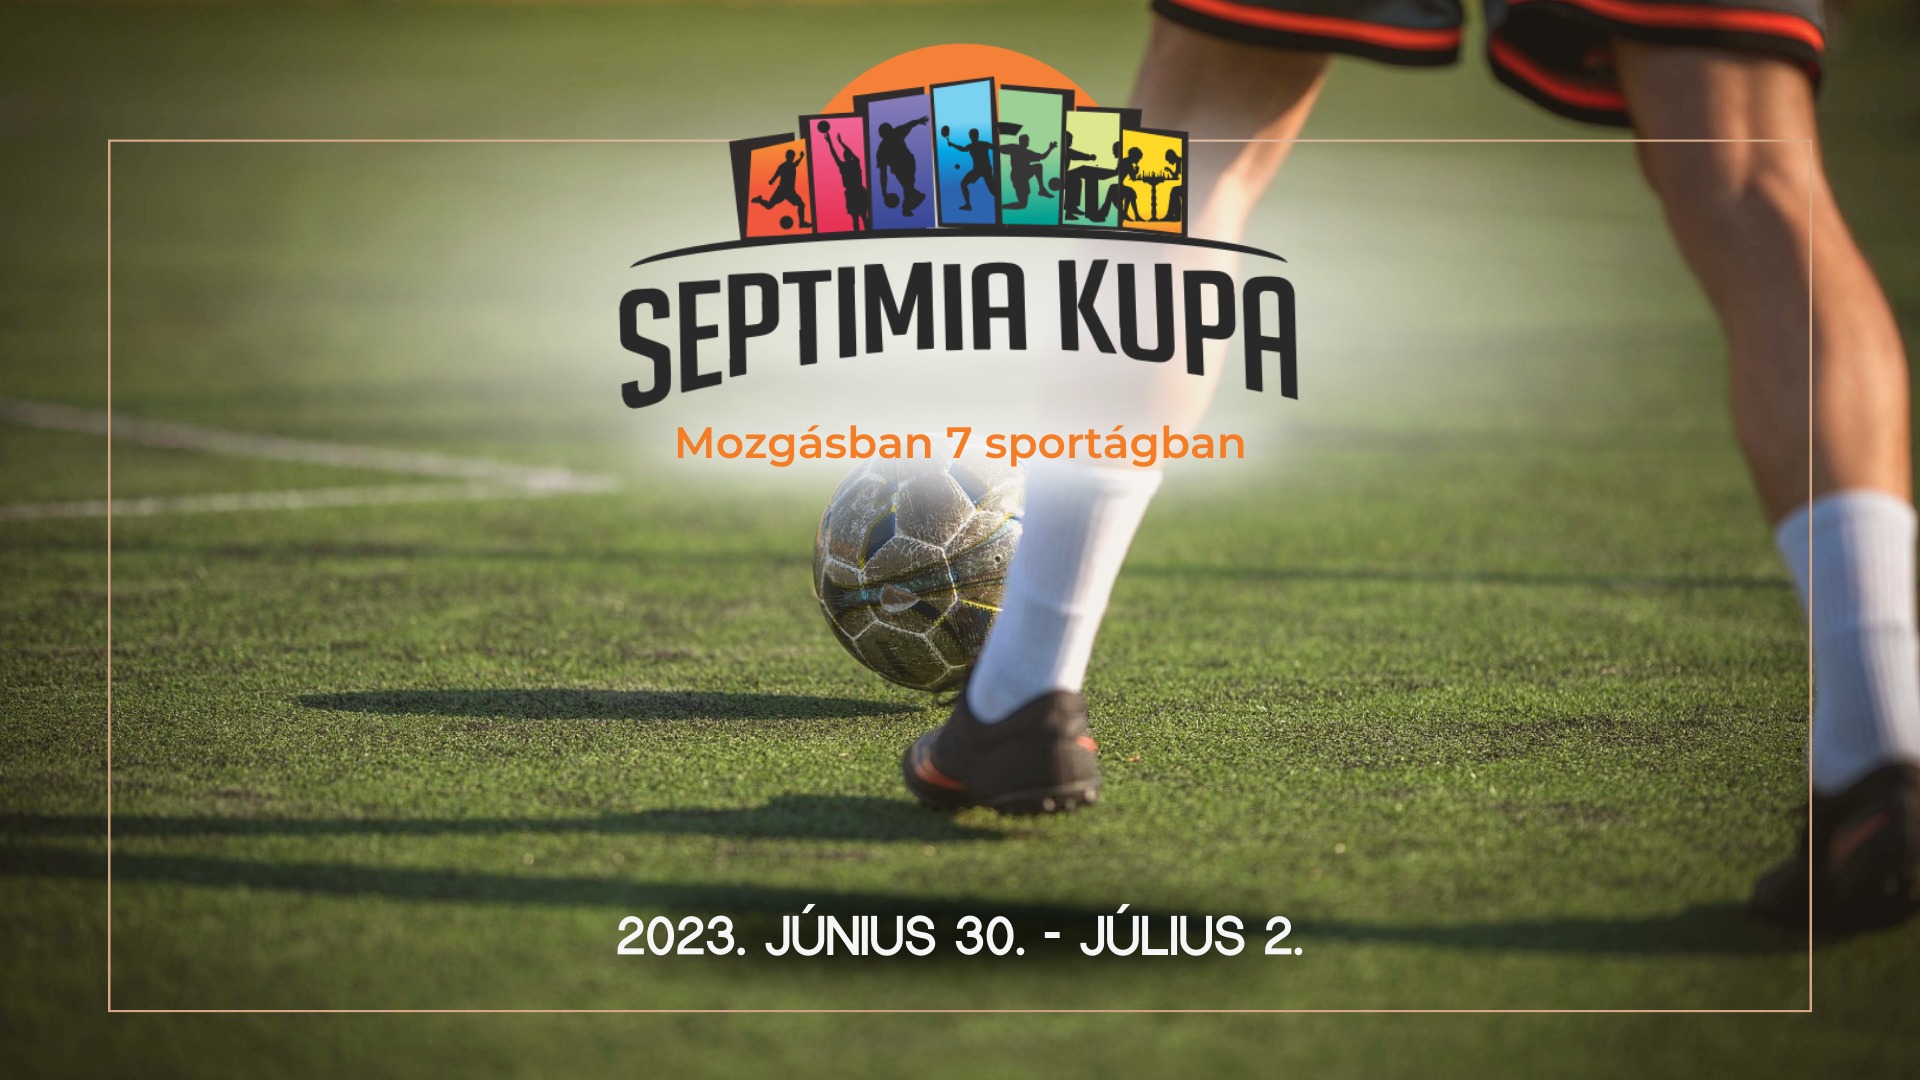 SEPTIMIA KUPA - Mozgásban 7 sportágban!